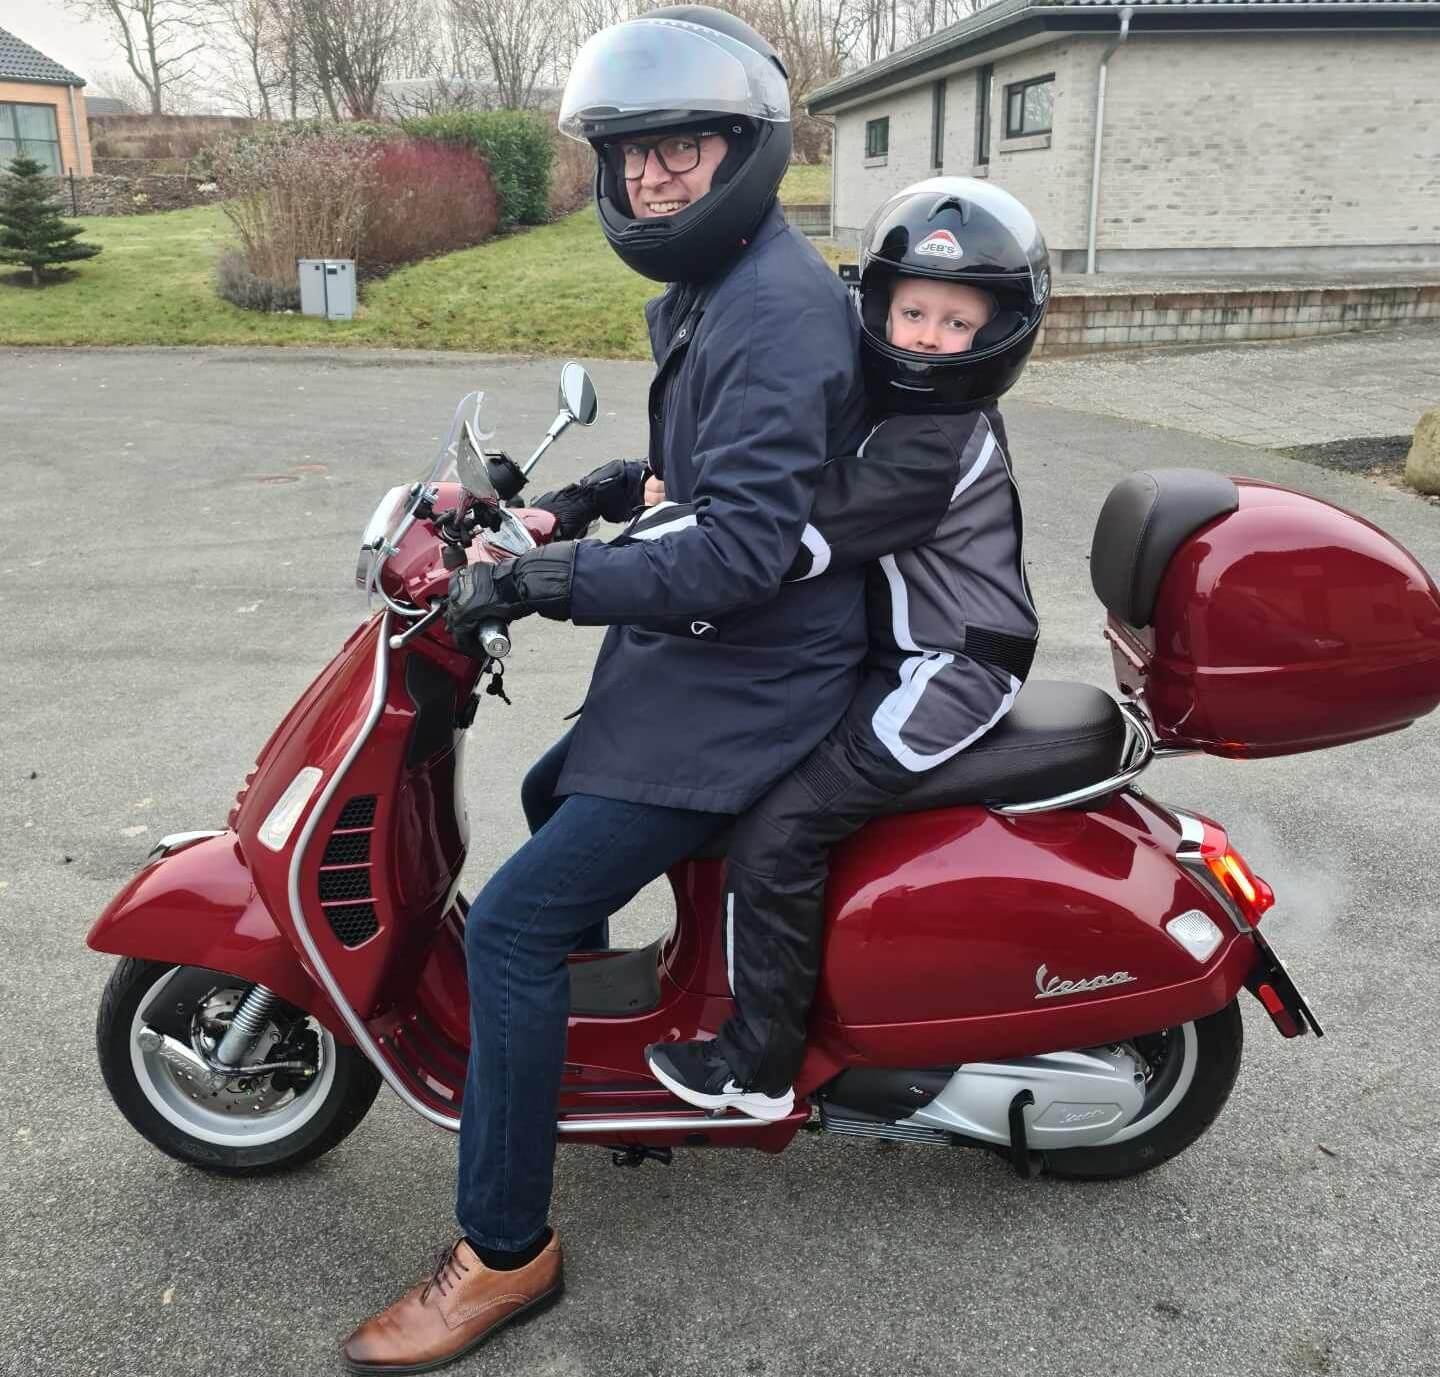 Steen Wrist er familiemenneske og elsker tiden med sine børn - både hjemme og på scooteren.